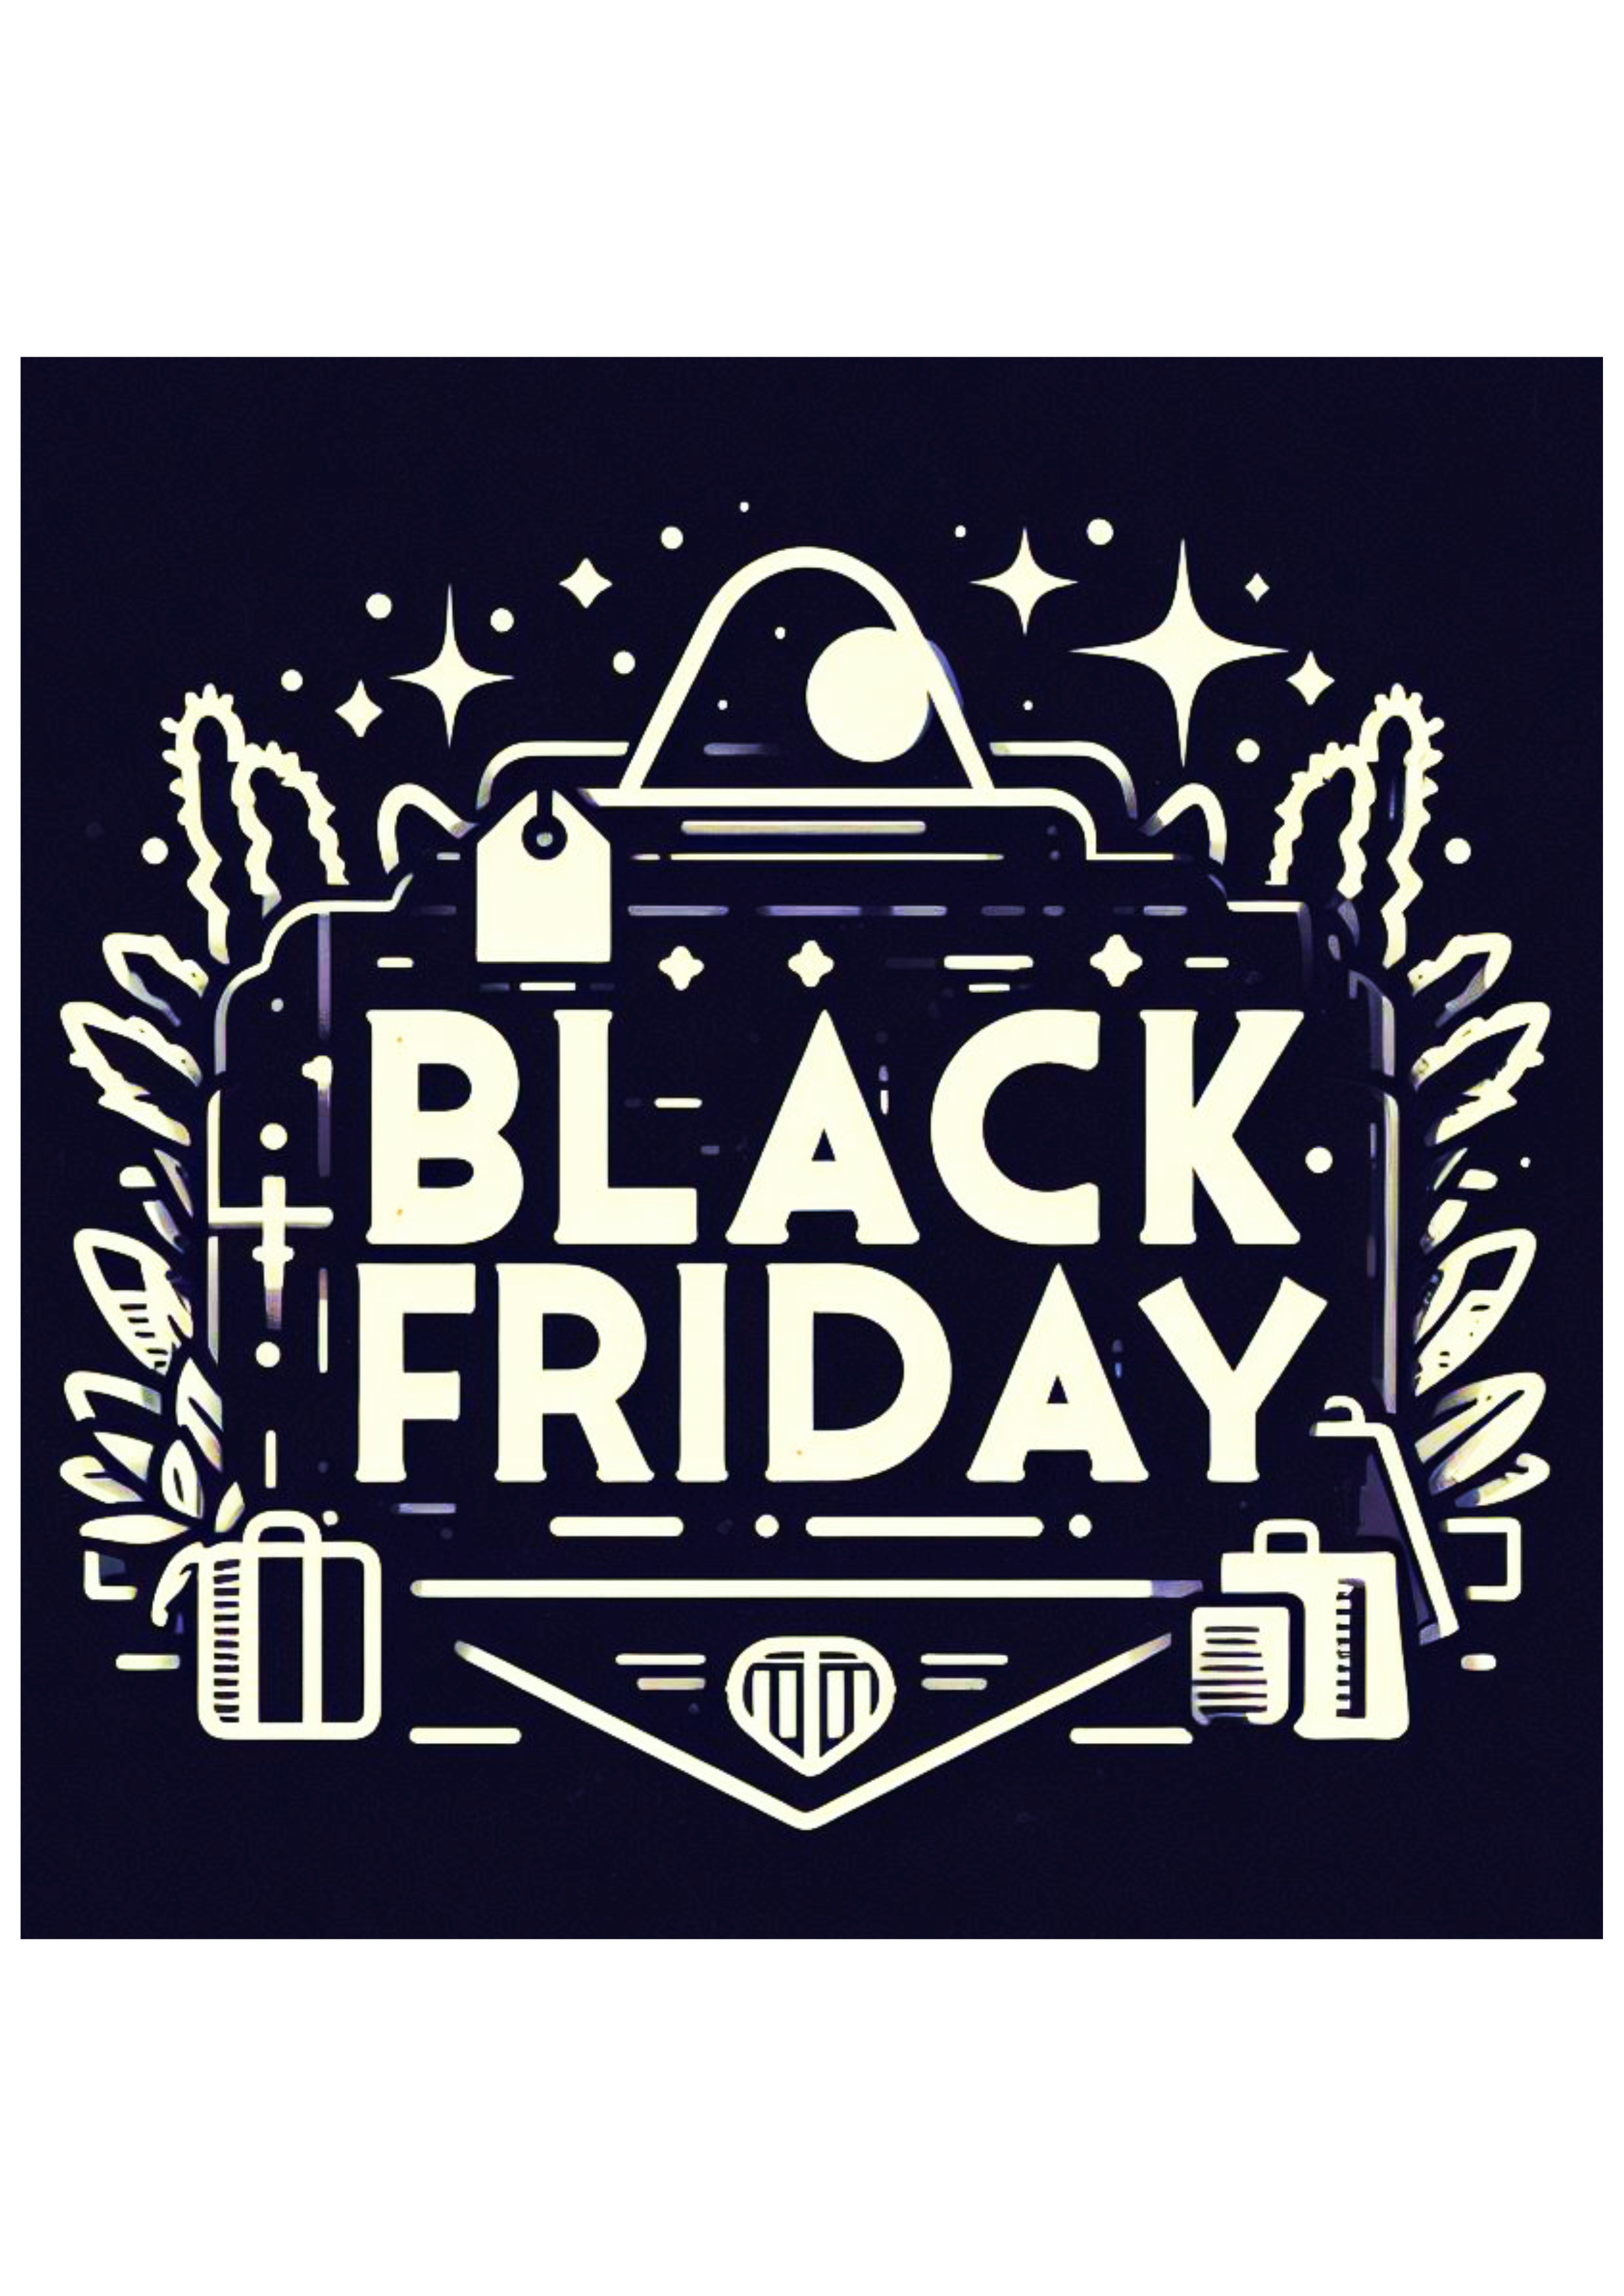 Black Friday tags para decoração design artes gráficas logomarca preto e branco tag adesivo quadrado png